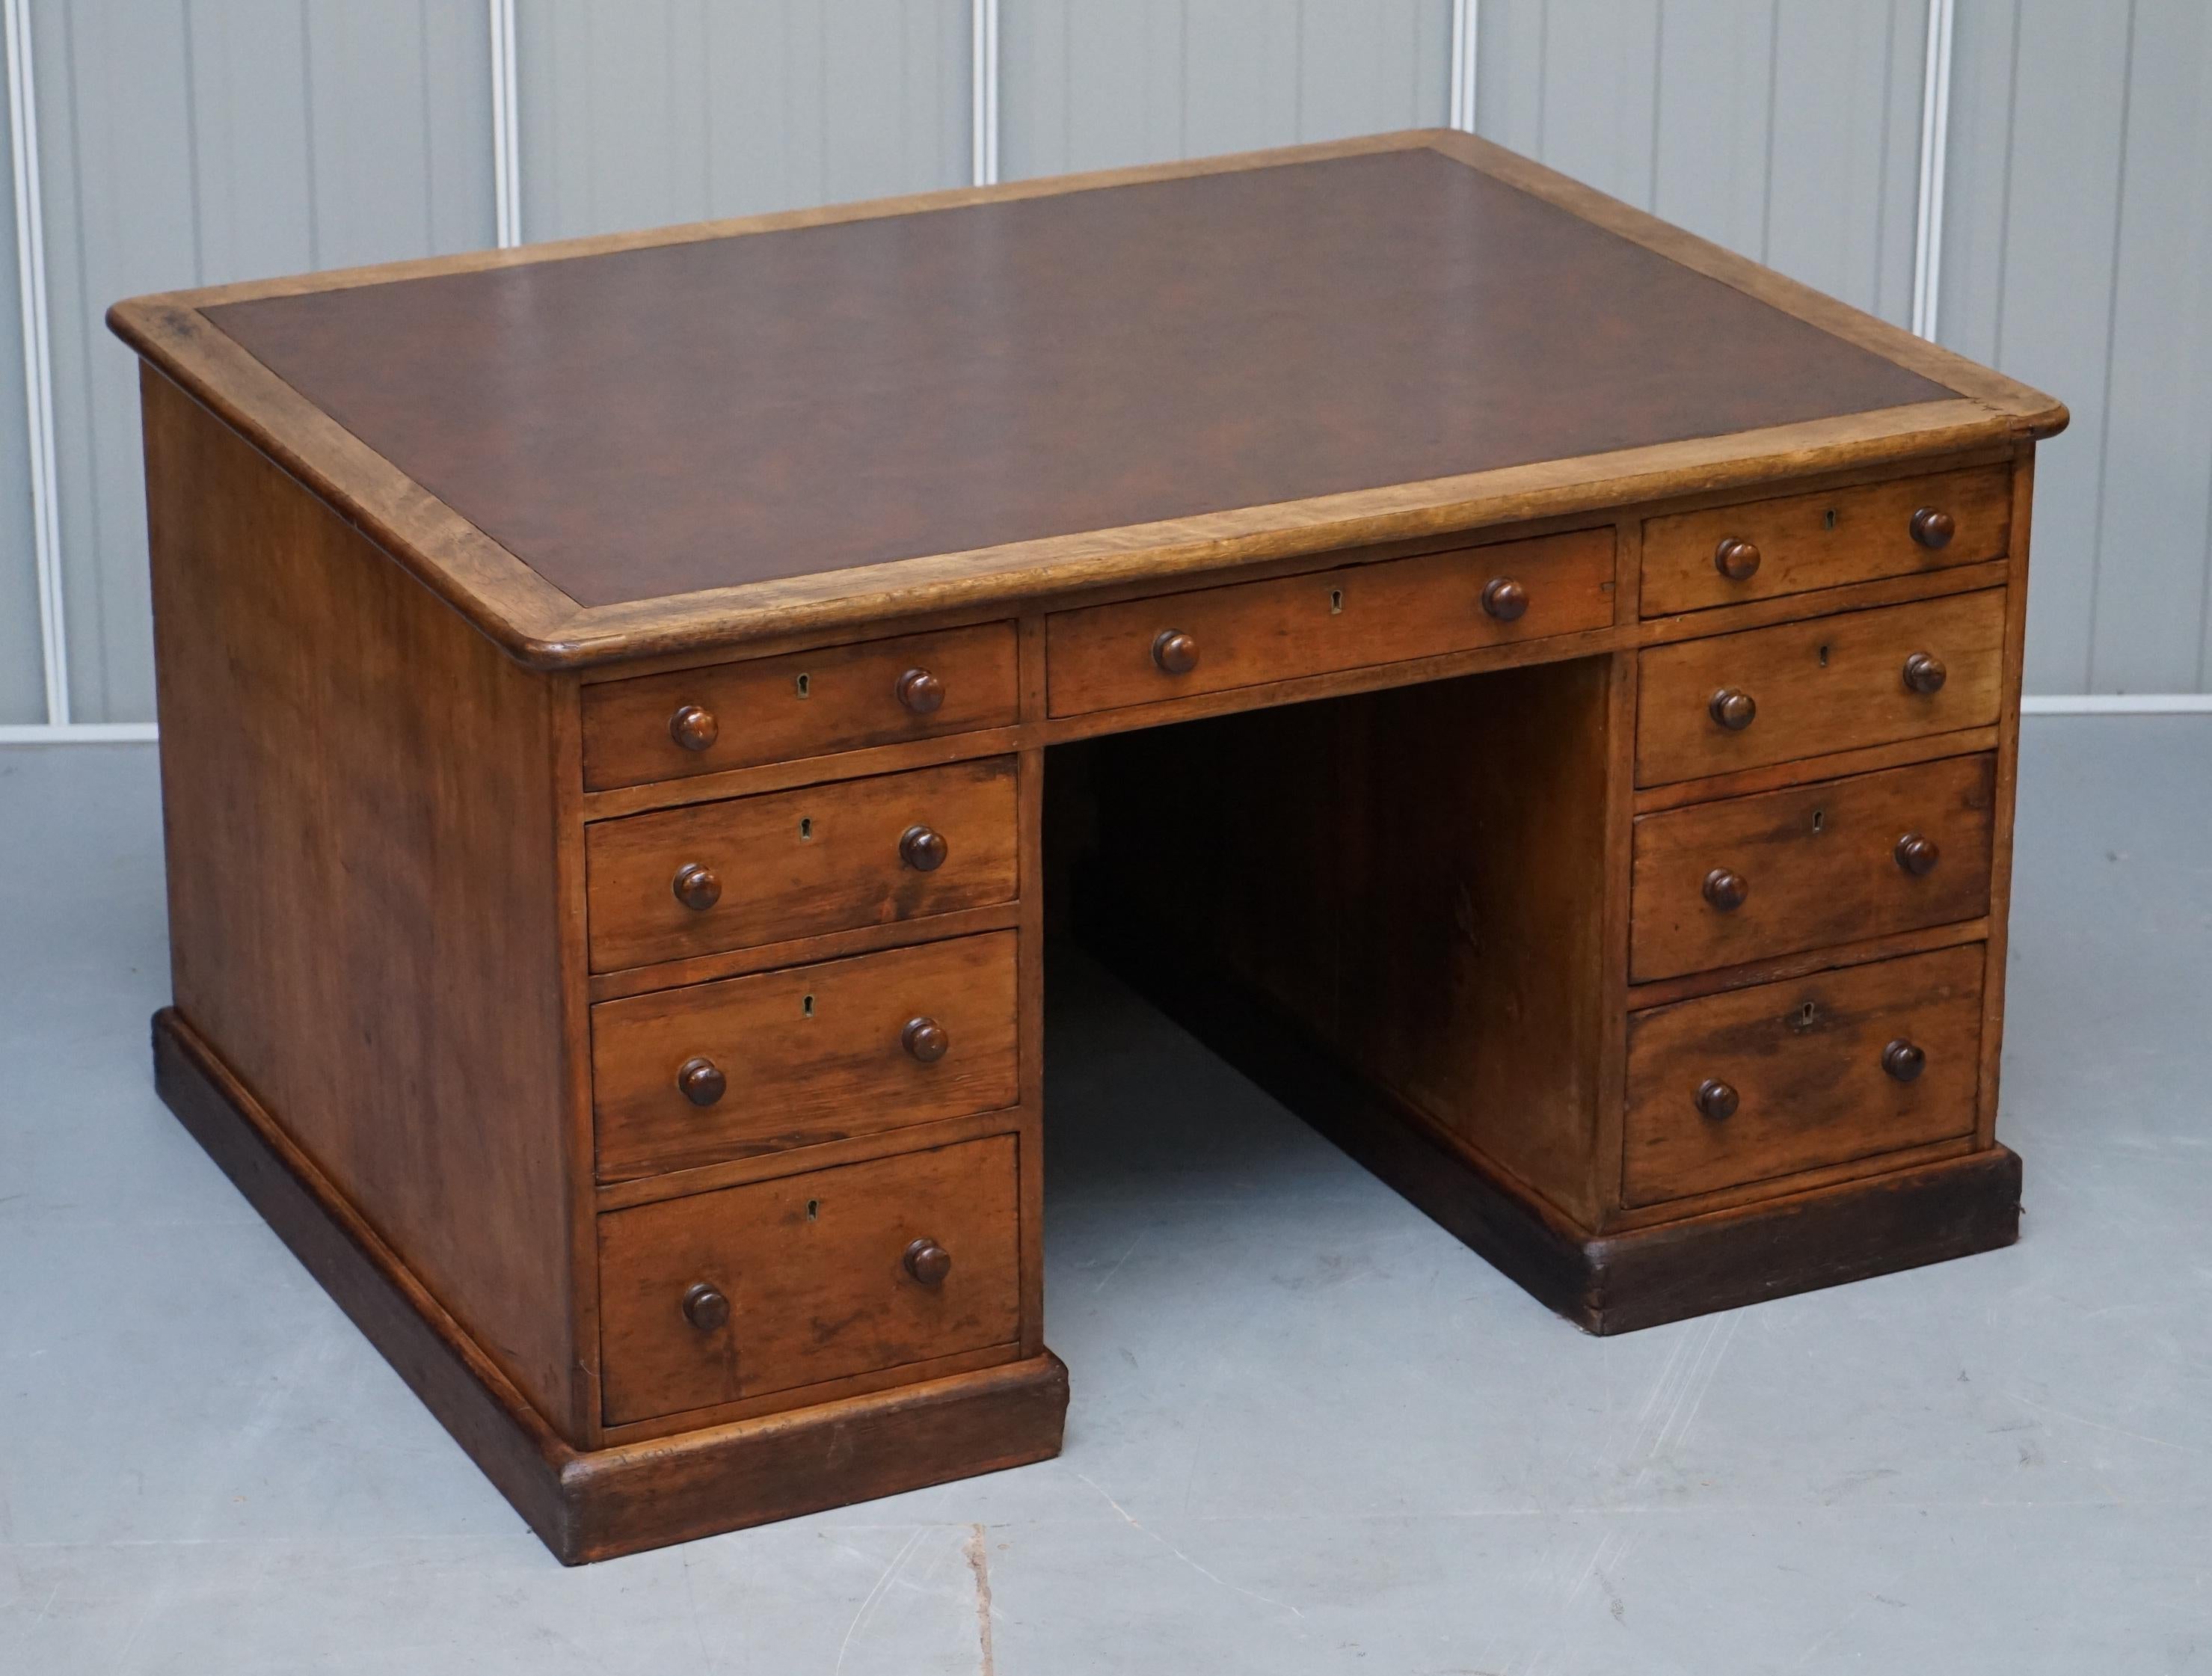 Wir freuen uns, diese absolut atemberaubende circa 1880 viktorianischen englischen Eiche antiken Knie Loch 18 Schublade Schreibtisch zum Verkauf anbieten

Ein wunderbarer Schreibtisch, wirklich sehr massiv und selten zu finden mit den vollen neun